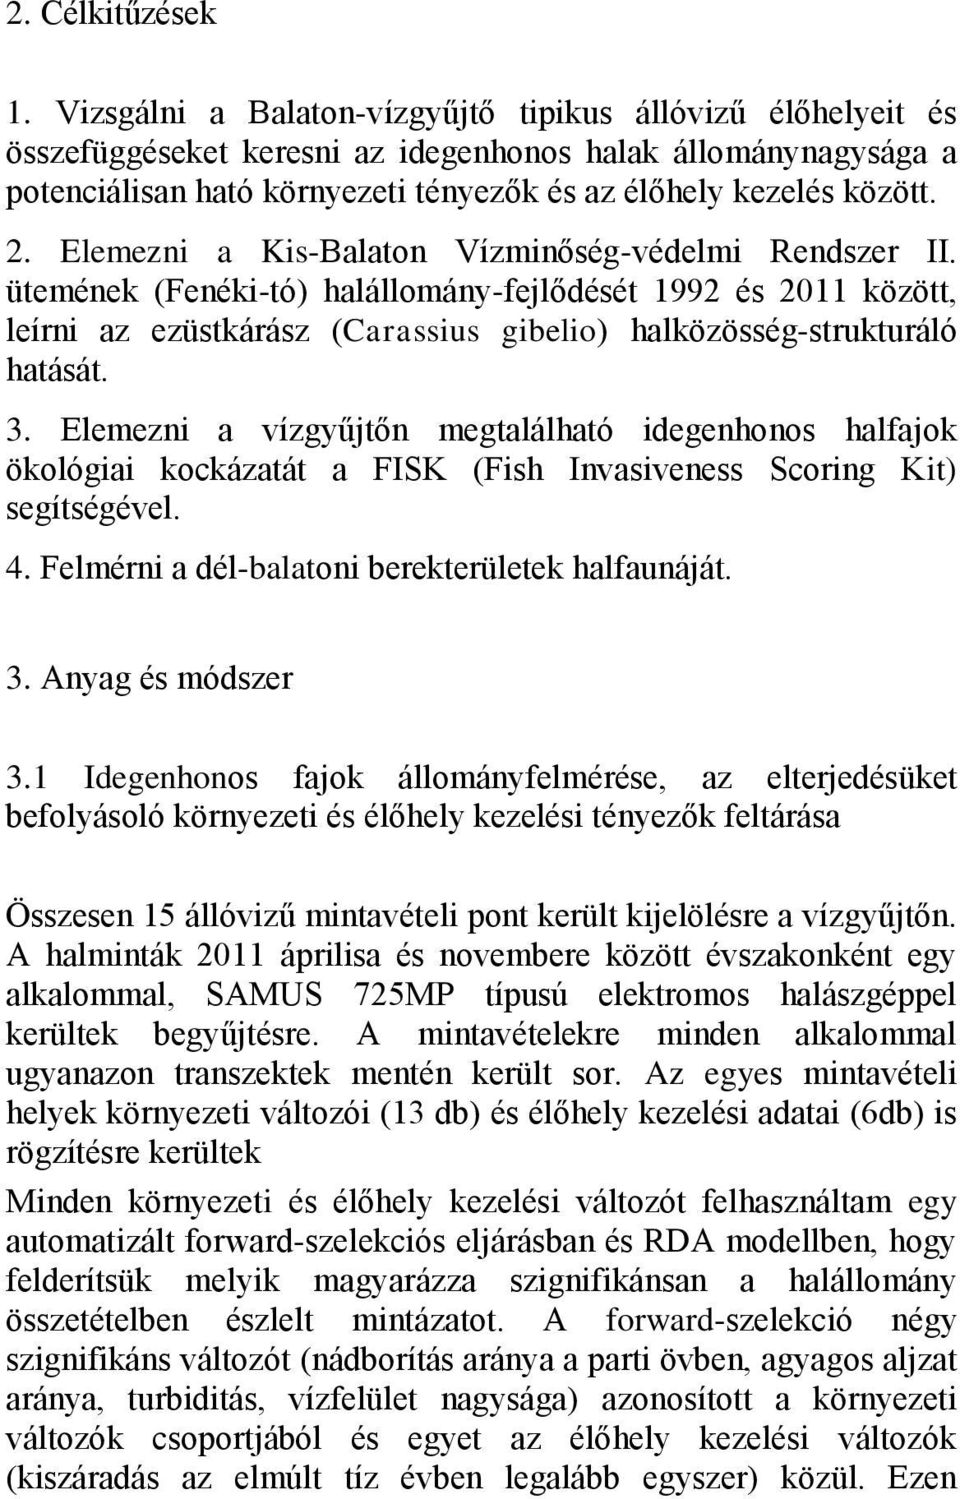 Elemezni a Kis-Balaton Vízminőség-védelmi Rendszer II. ütemének (Fenéki-tó) halállomány-fejlődését 1992 és 2011 között, leírni az ezüstkárász (Carassius gibelio) halközösség-strukturáló hatását. 3.